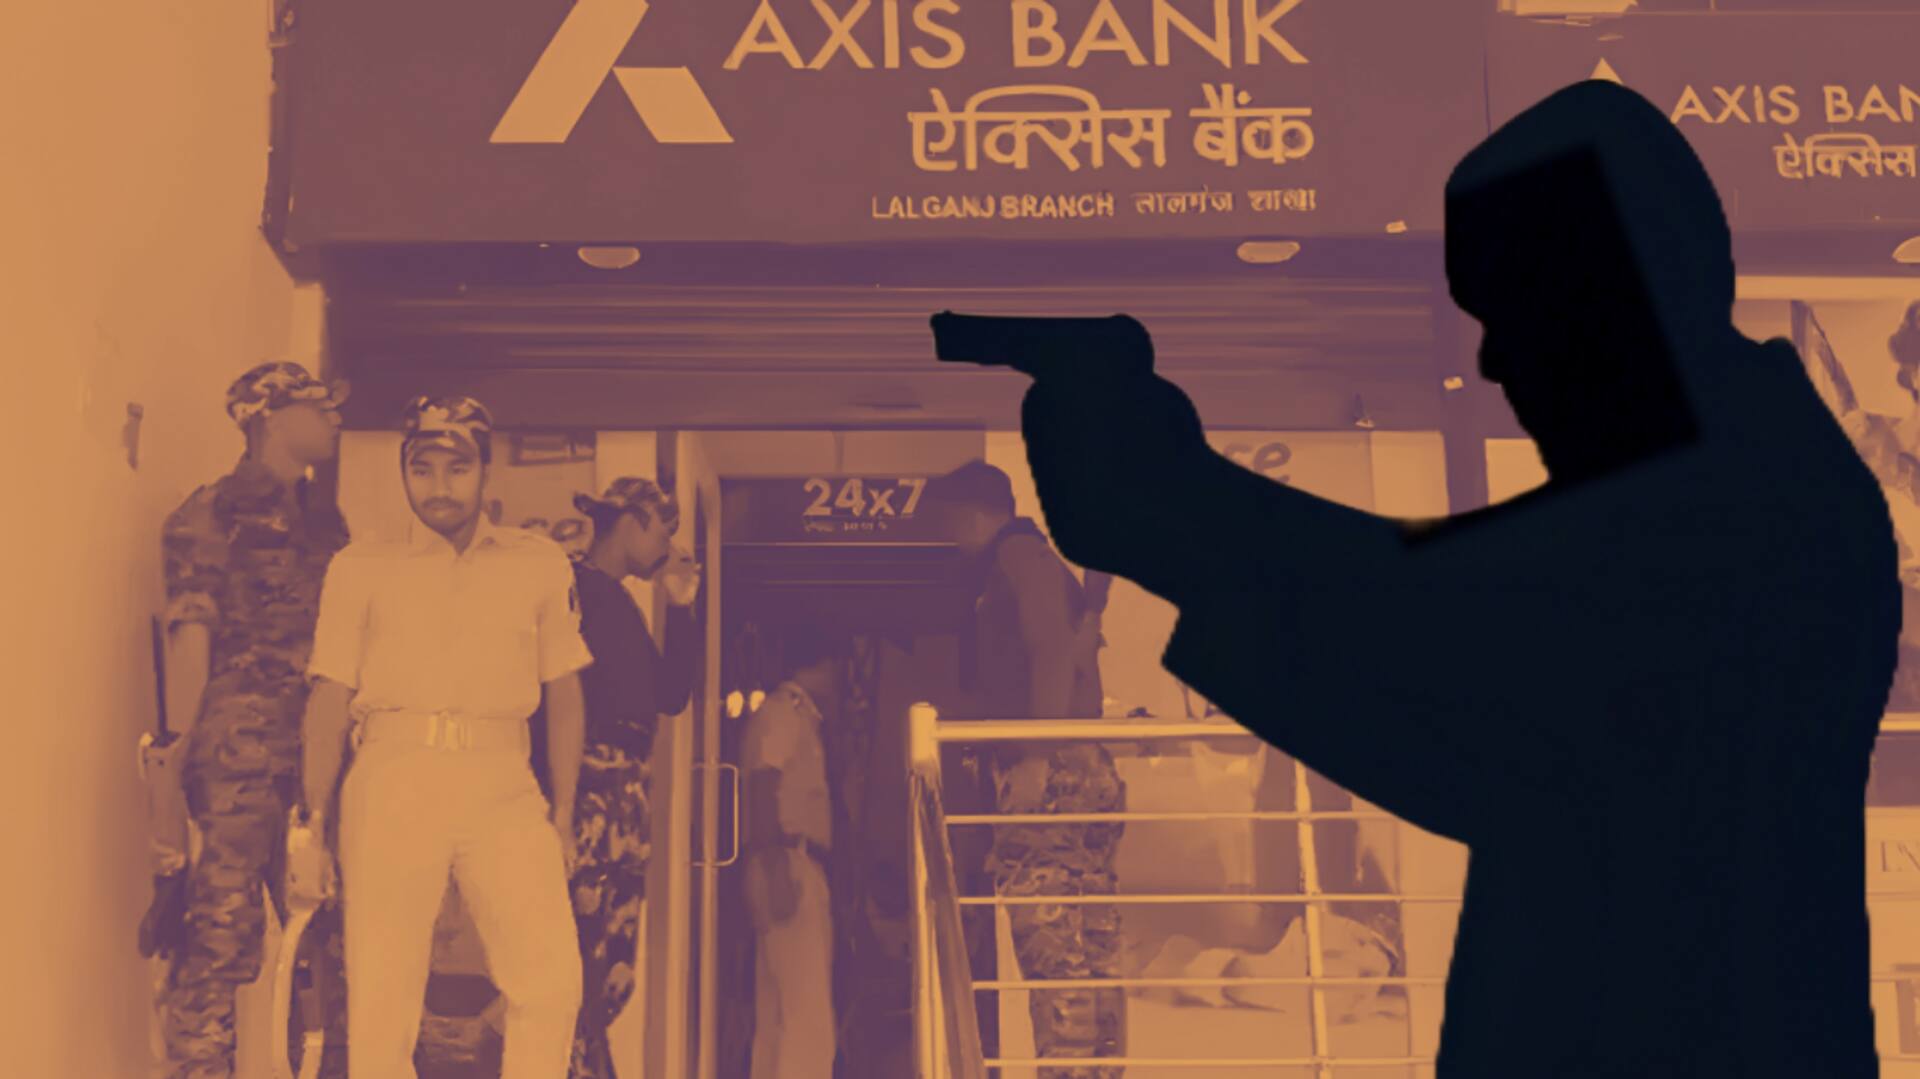 बिहार: पुलिसकर्मी के बेटे ने रची थी बैंक से 1 करोड़ रुपये लूटने की साजिश